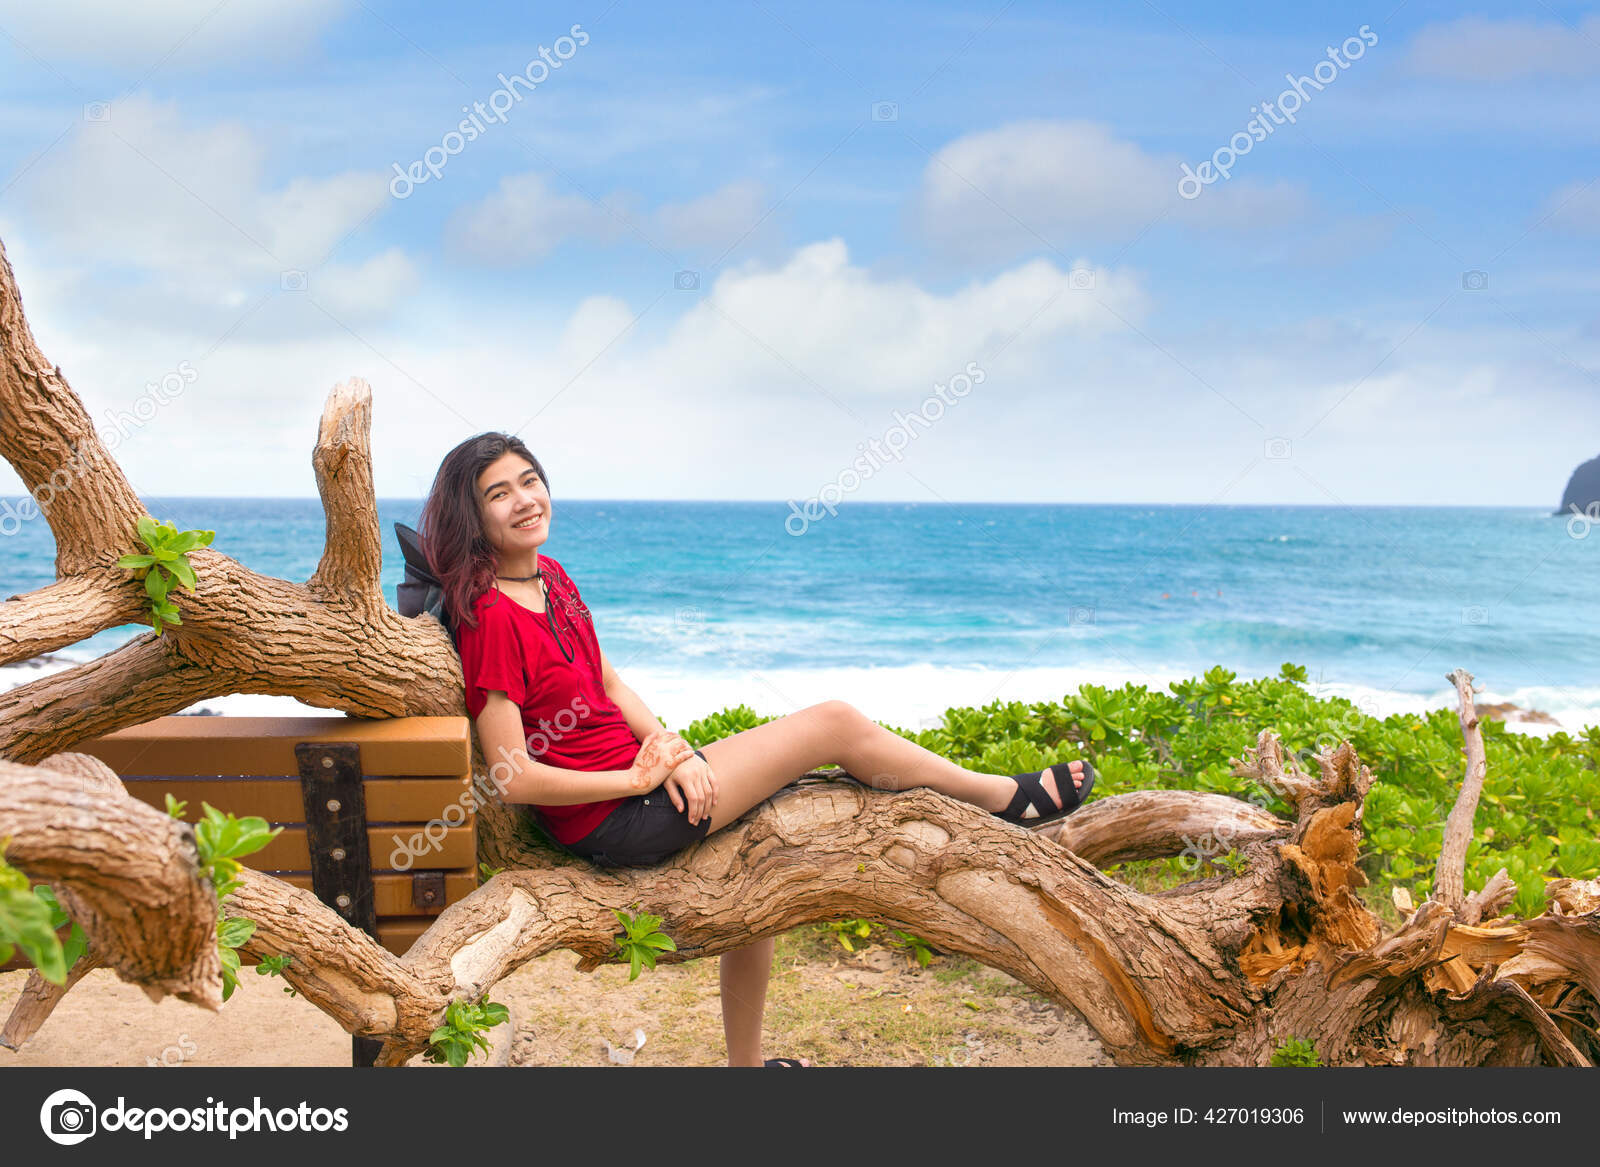 夏威夷瓦胡岛makapu U海滩公园一位年纪轻轻的亚洲白人少女坐在岩石沙滩上的锯齿状树枝上旁边是蓝色的热带海洋